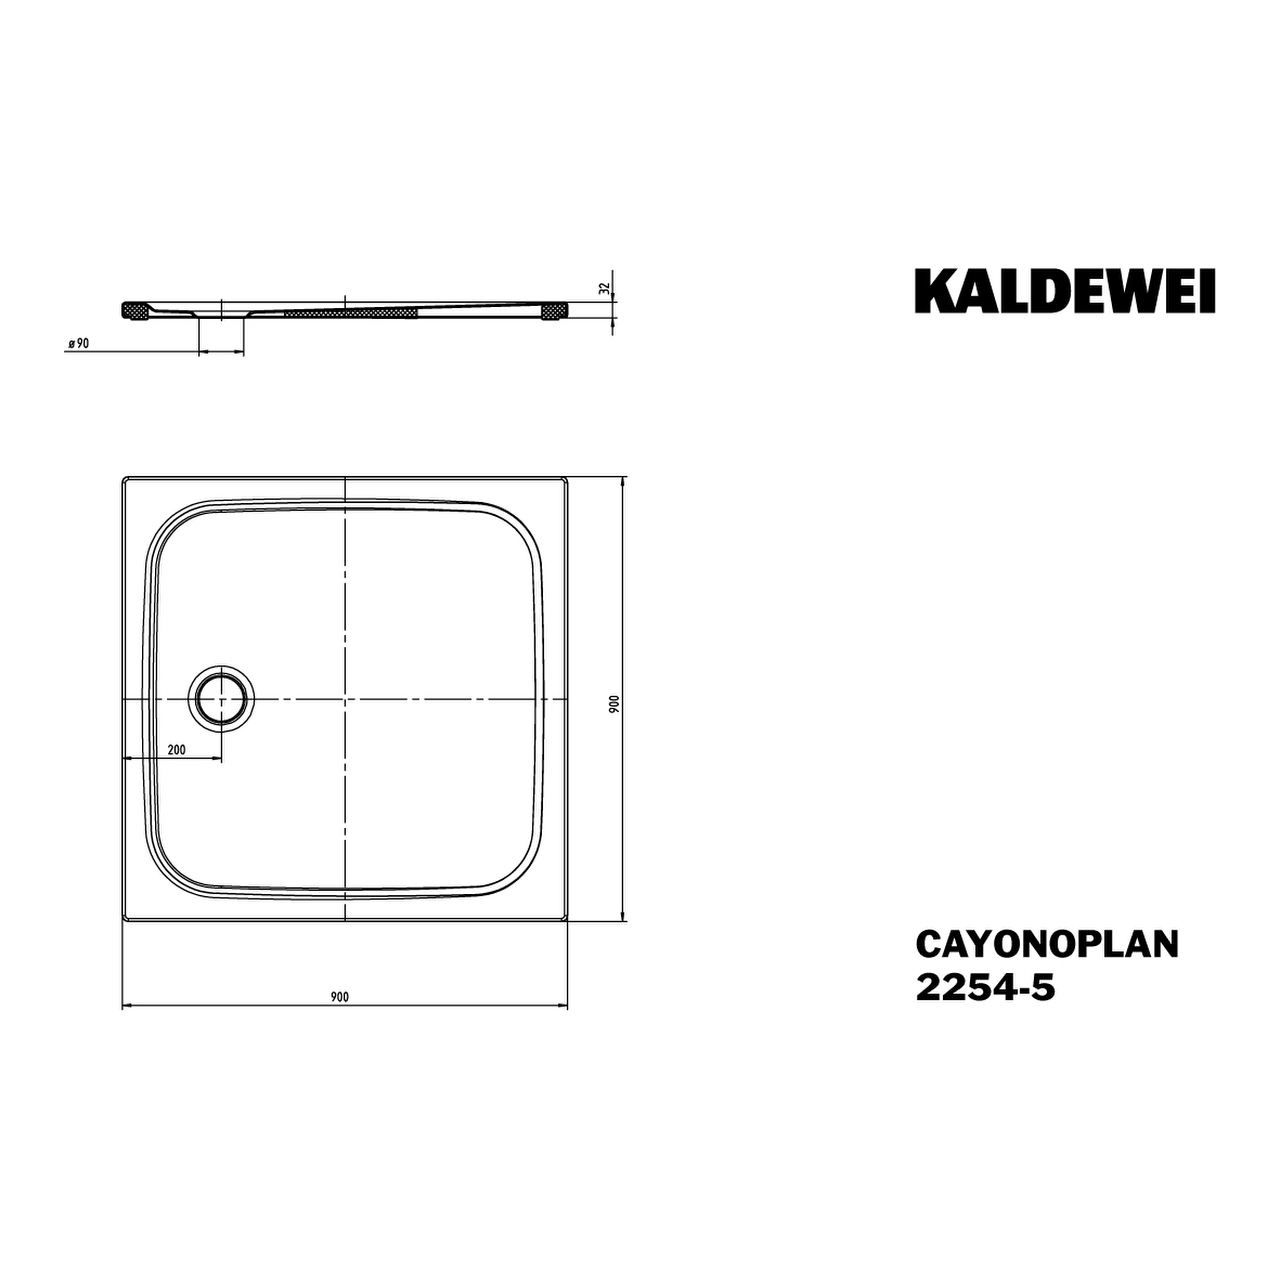 Kaldewei quadrat Duschwanne „Cayonoplan“ 90 × 90 cm in pergamon mit Antislip